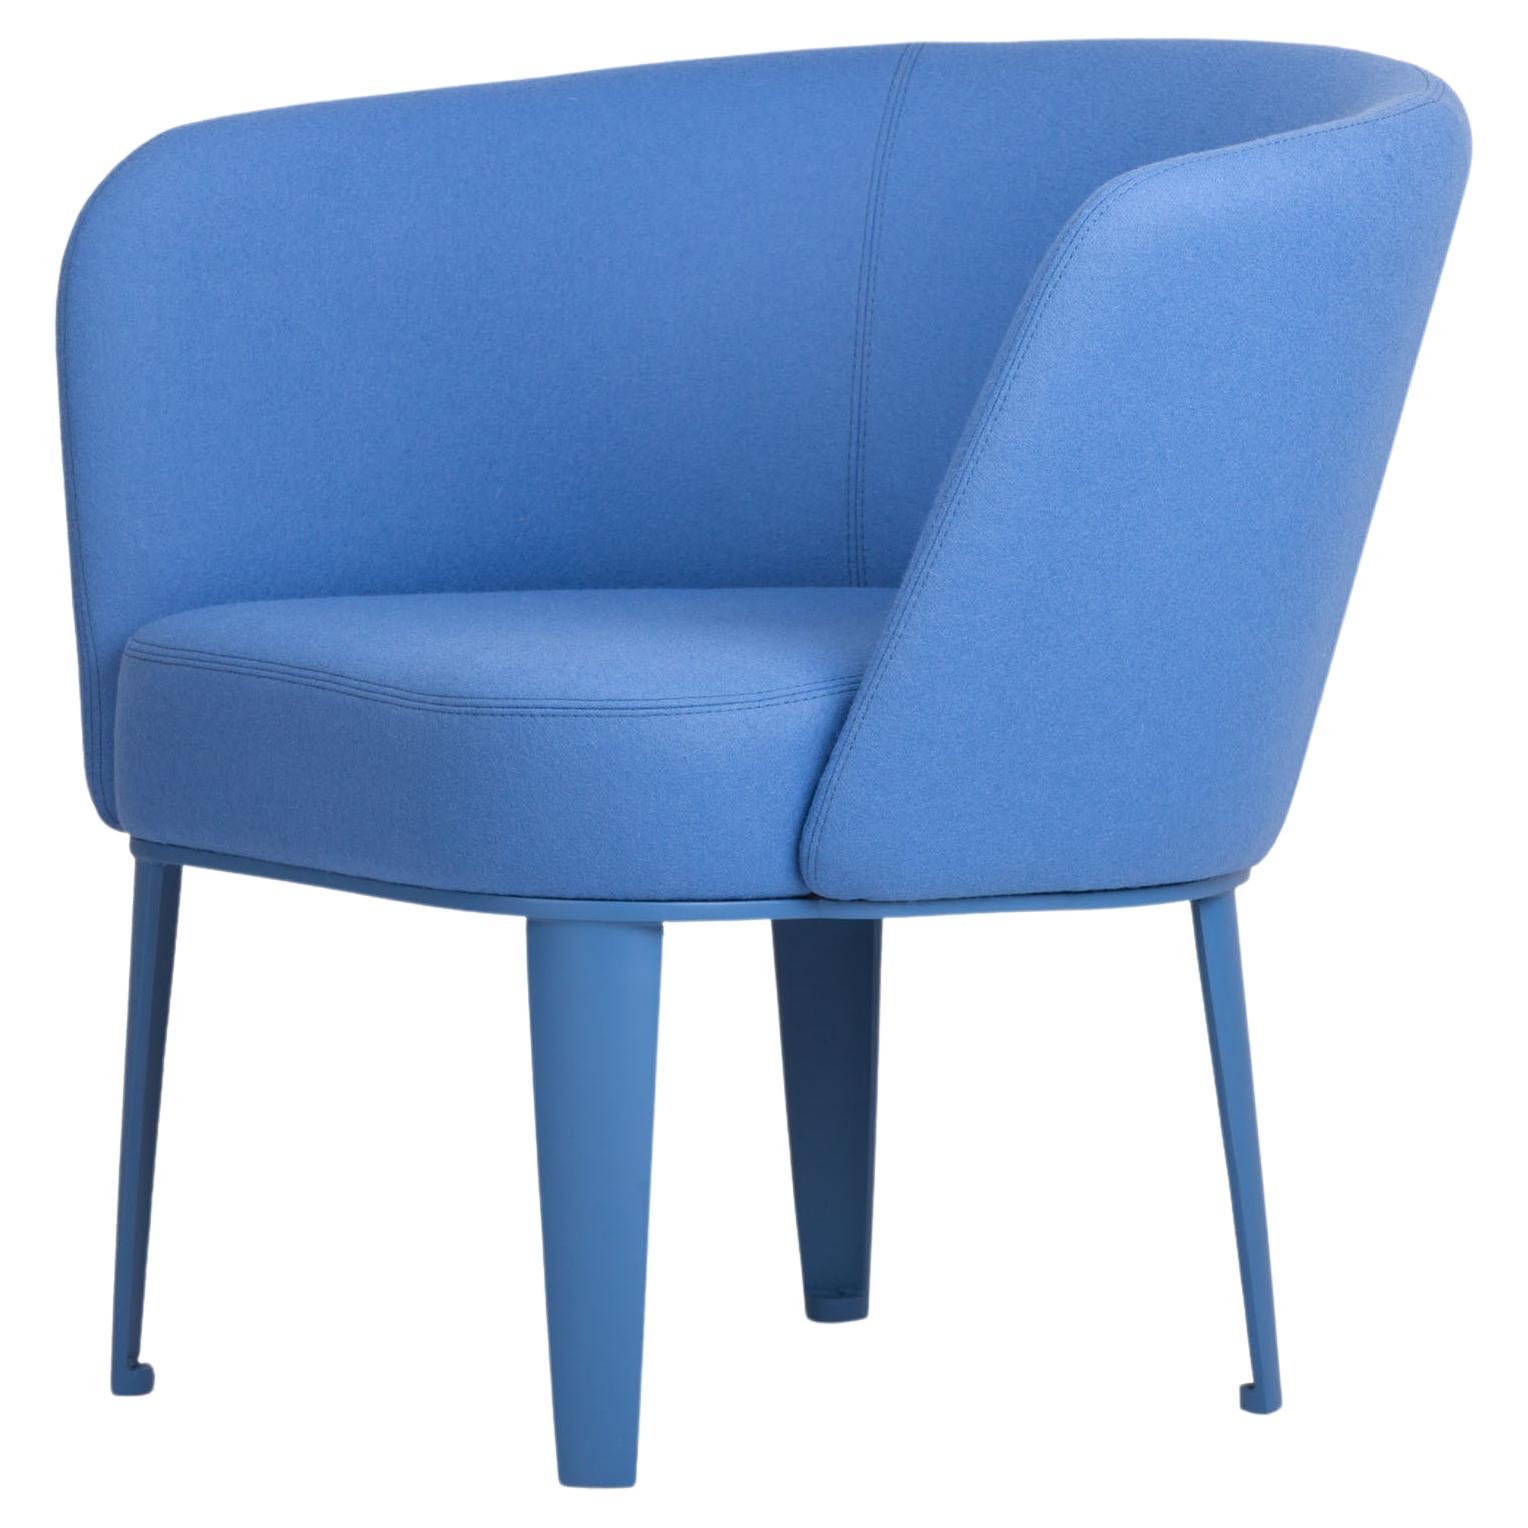 Blauer rechtser Sessel des 21. Jahrhunderts, hergestellt in Italien